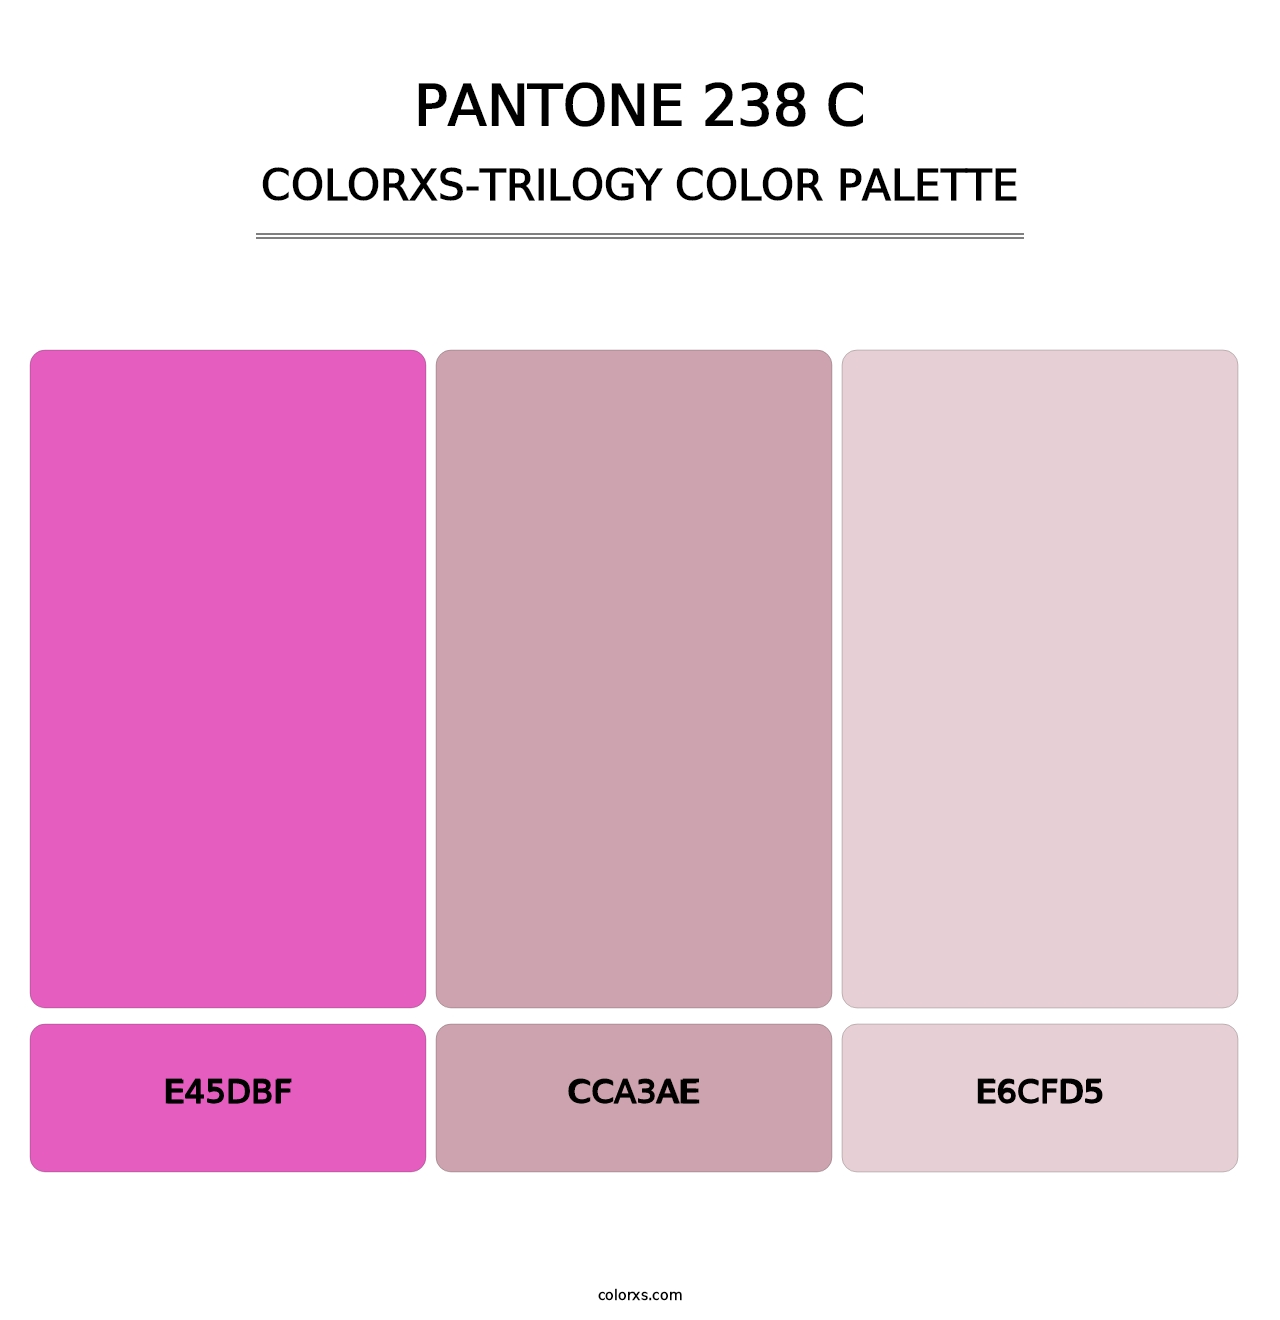 PANTONE 238 C - Colorxs Trilogy Palette